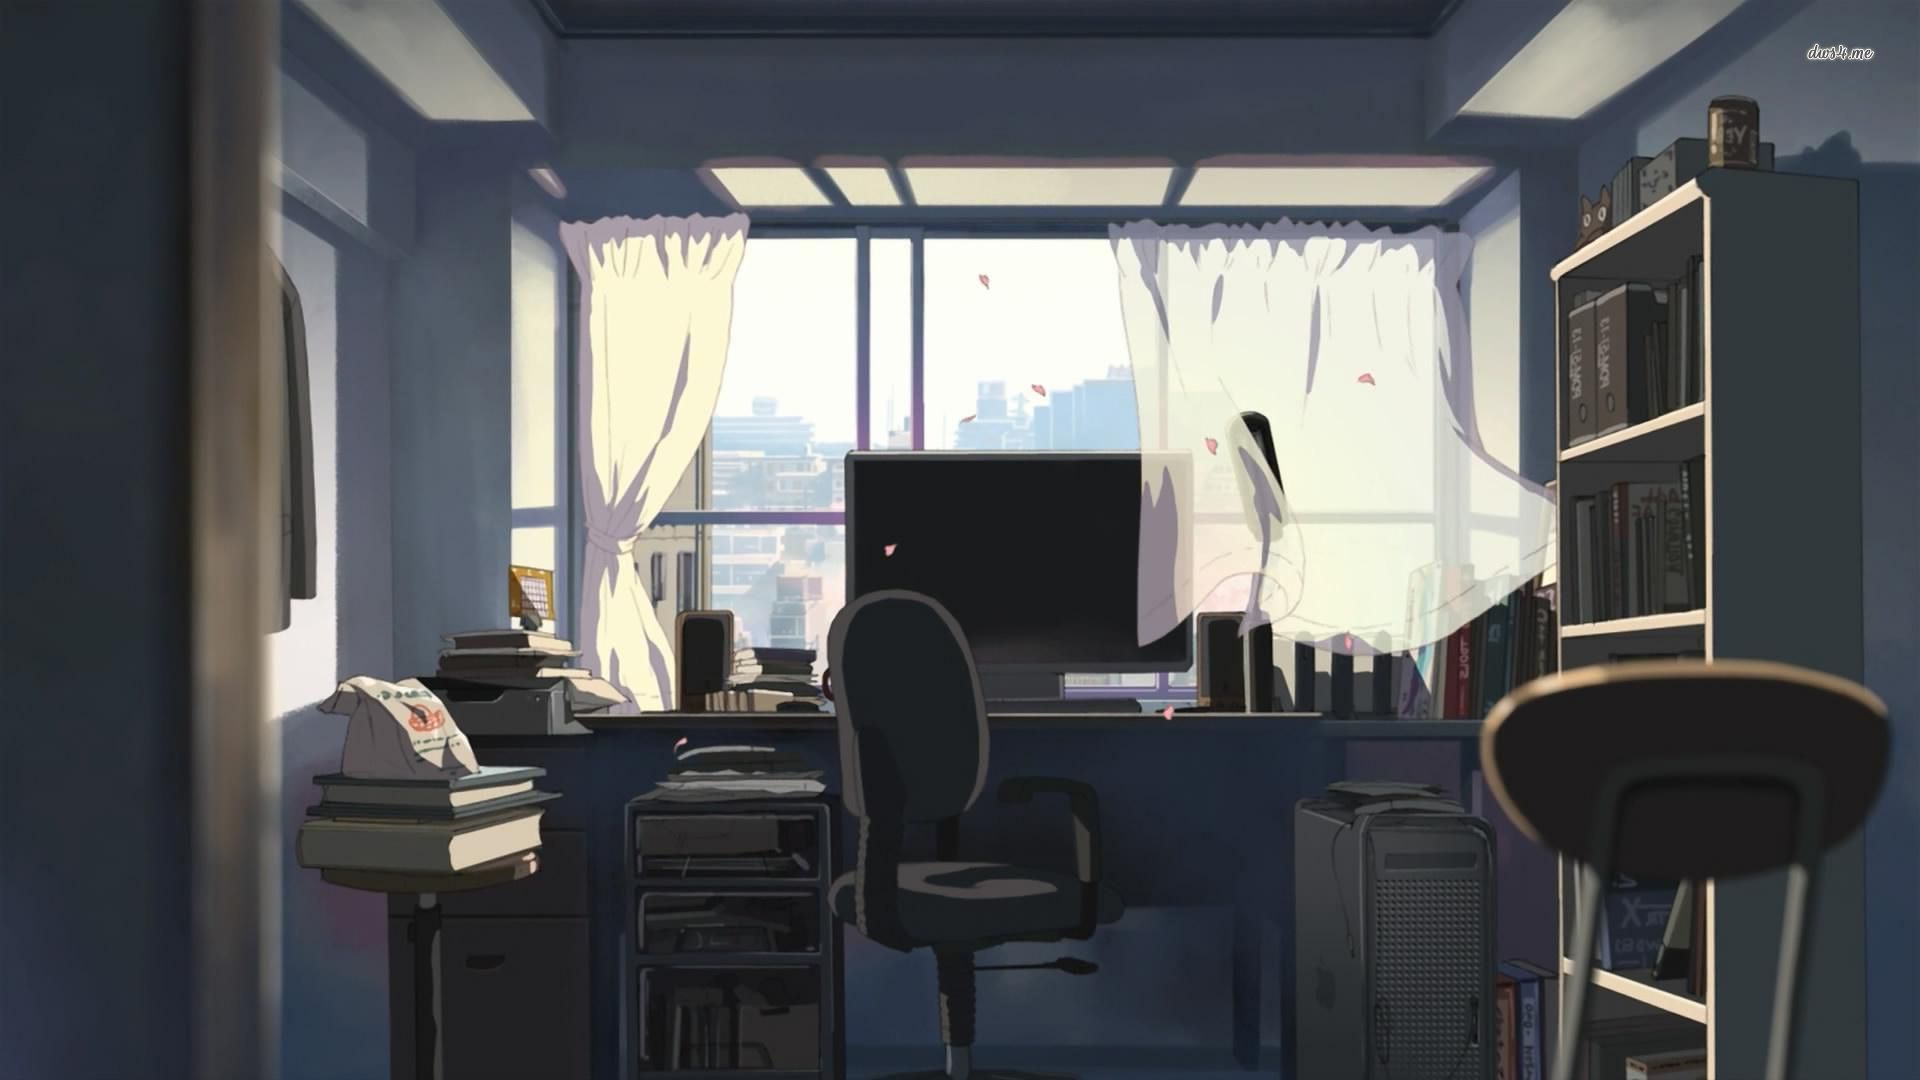 Bạn là một fan của anime và muốn tìm kiếm một bức ảnh nền thú vị cho văn phòng của mình? Hãy khám phá bức ảnh anime văn phòng này để tận hưởng không gian làm việc sáng tạo, tươi mới và đầy cảm hứng.